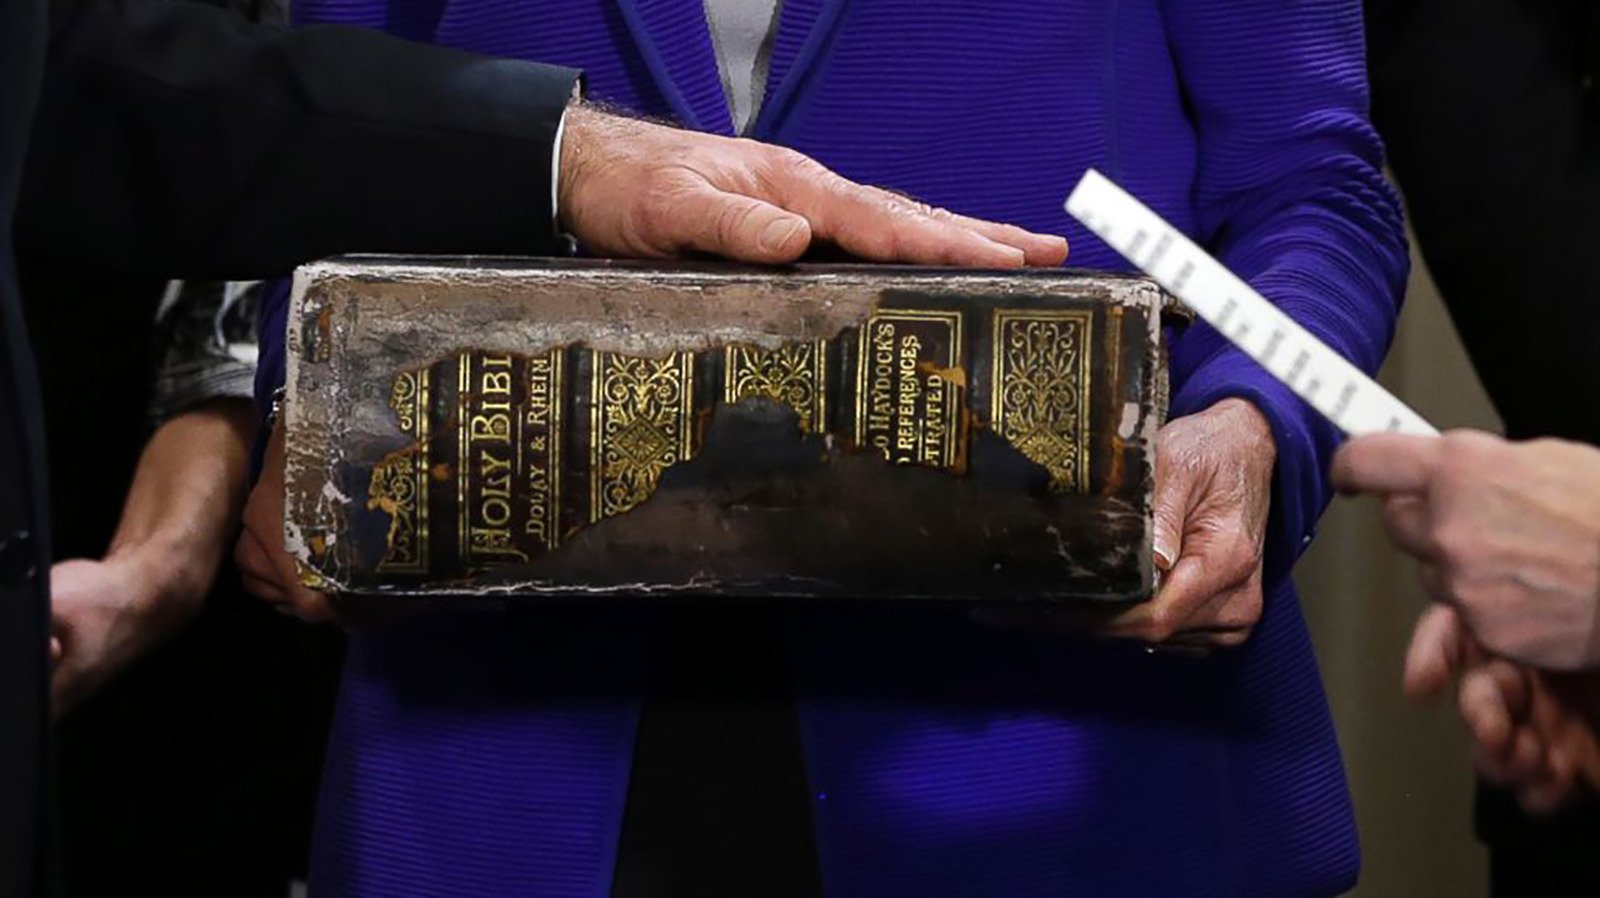 Joe Biden's Inauguration Bible Has More Meaning Than You Realize